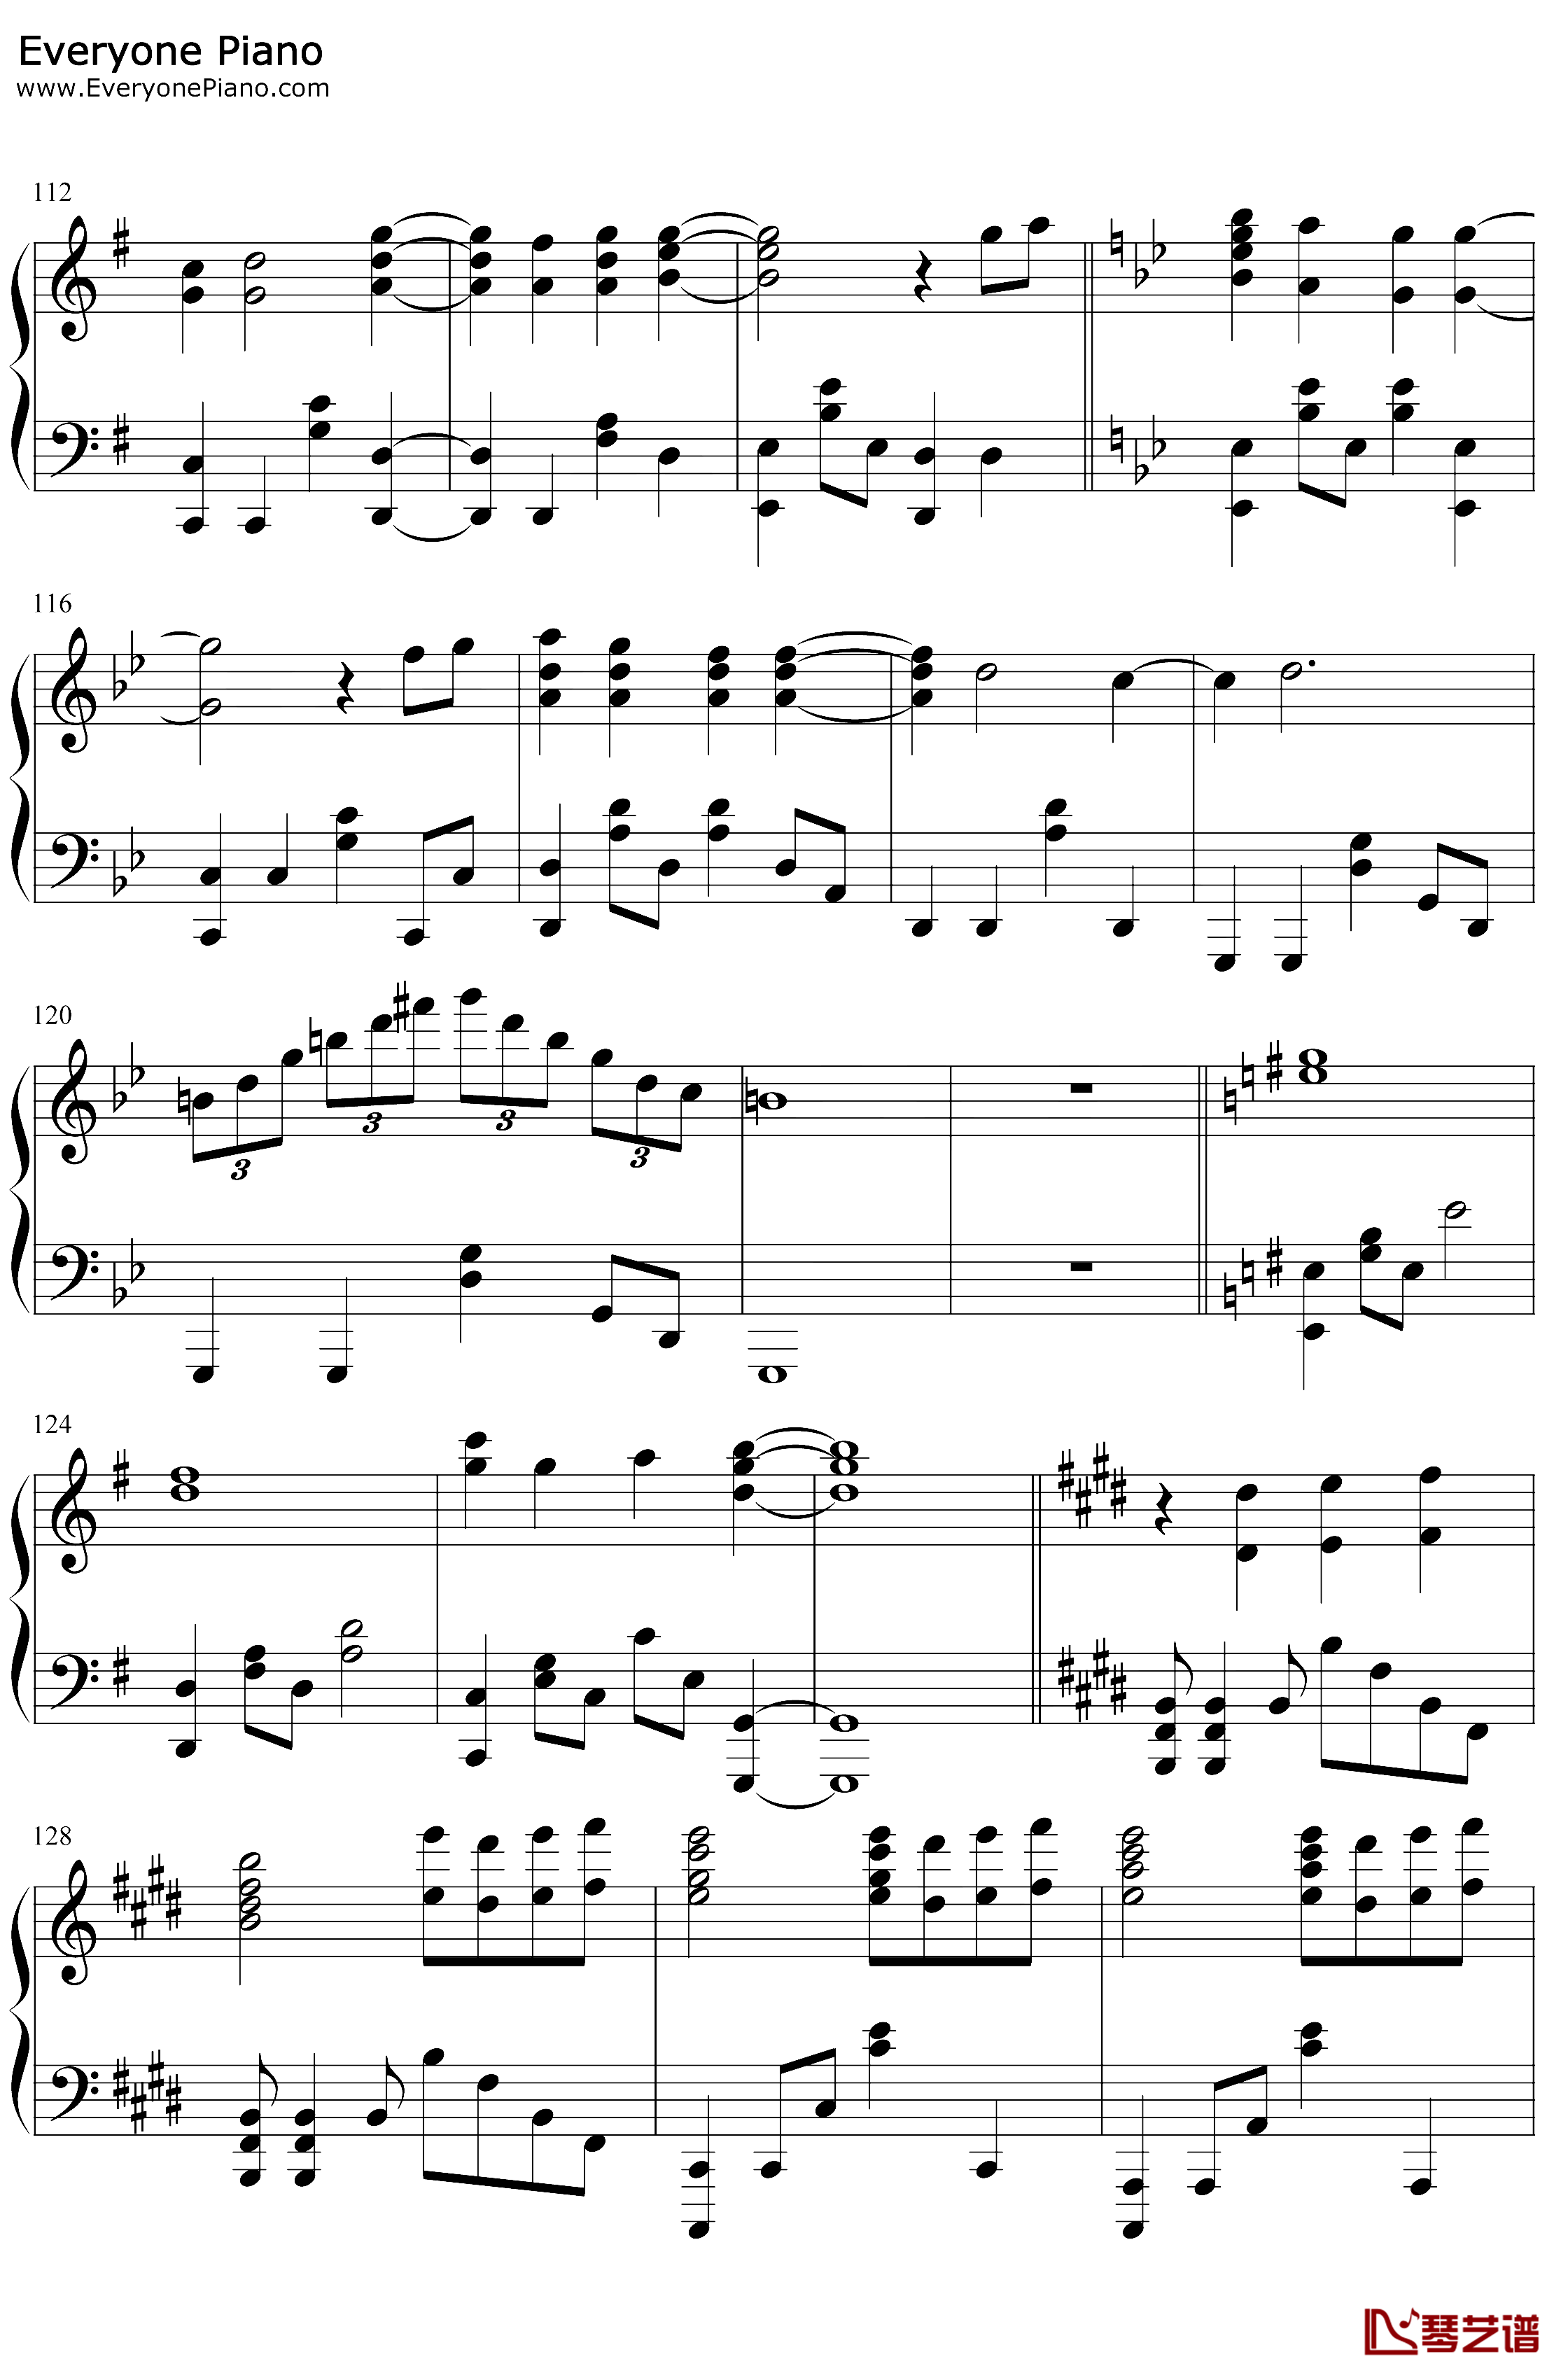 炎钢琴谱-LiSA-鬼灭之刃无限列车篇主题曲7